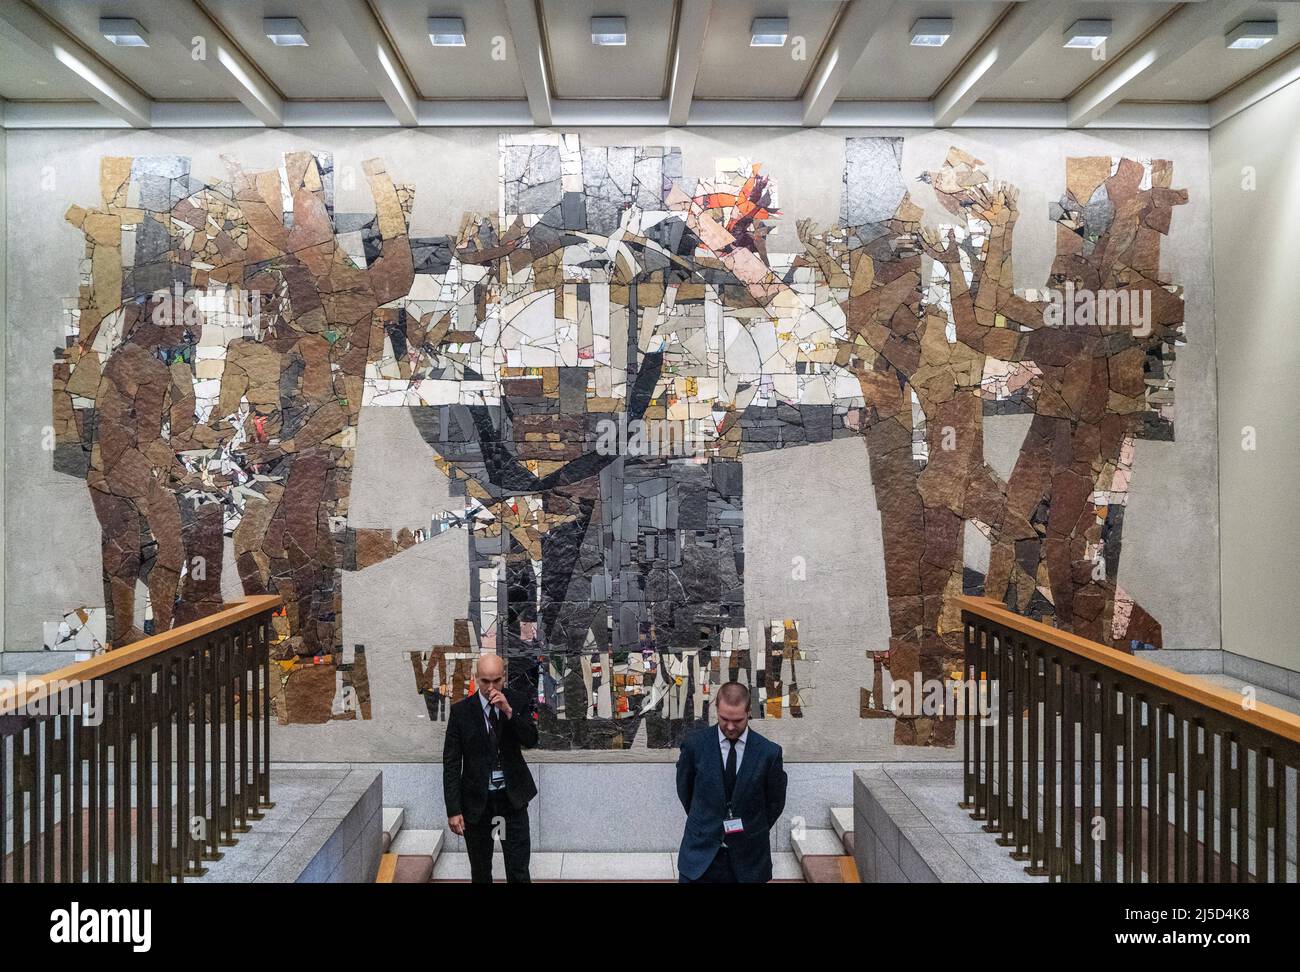 Norvège, Oslo, 04.11.2021. Visite officielle du Président allemand en Norvège le 04.11.2021. Le Parlement norvégien (Stortinget). [traduction automatique] Banque D'Images